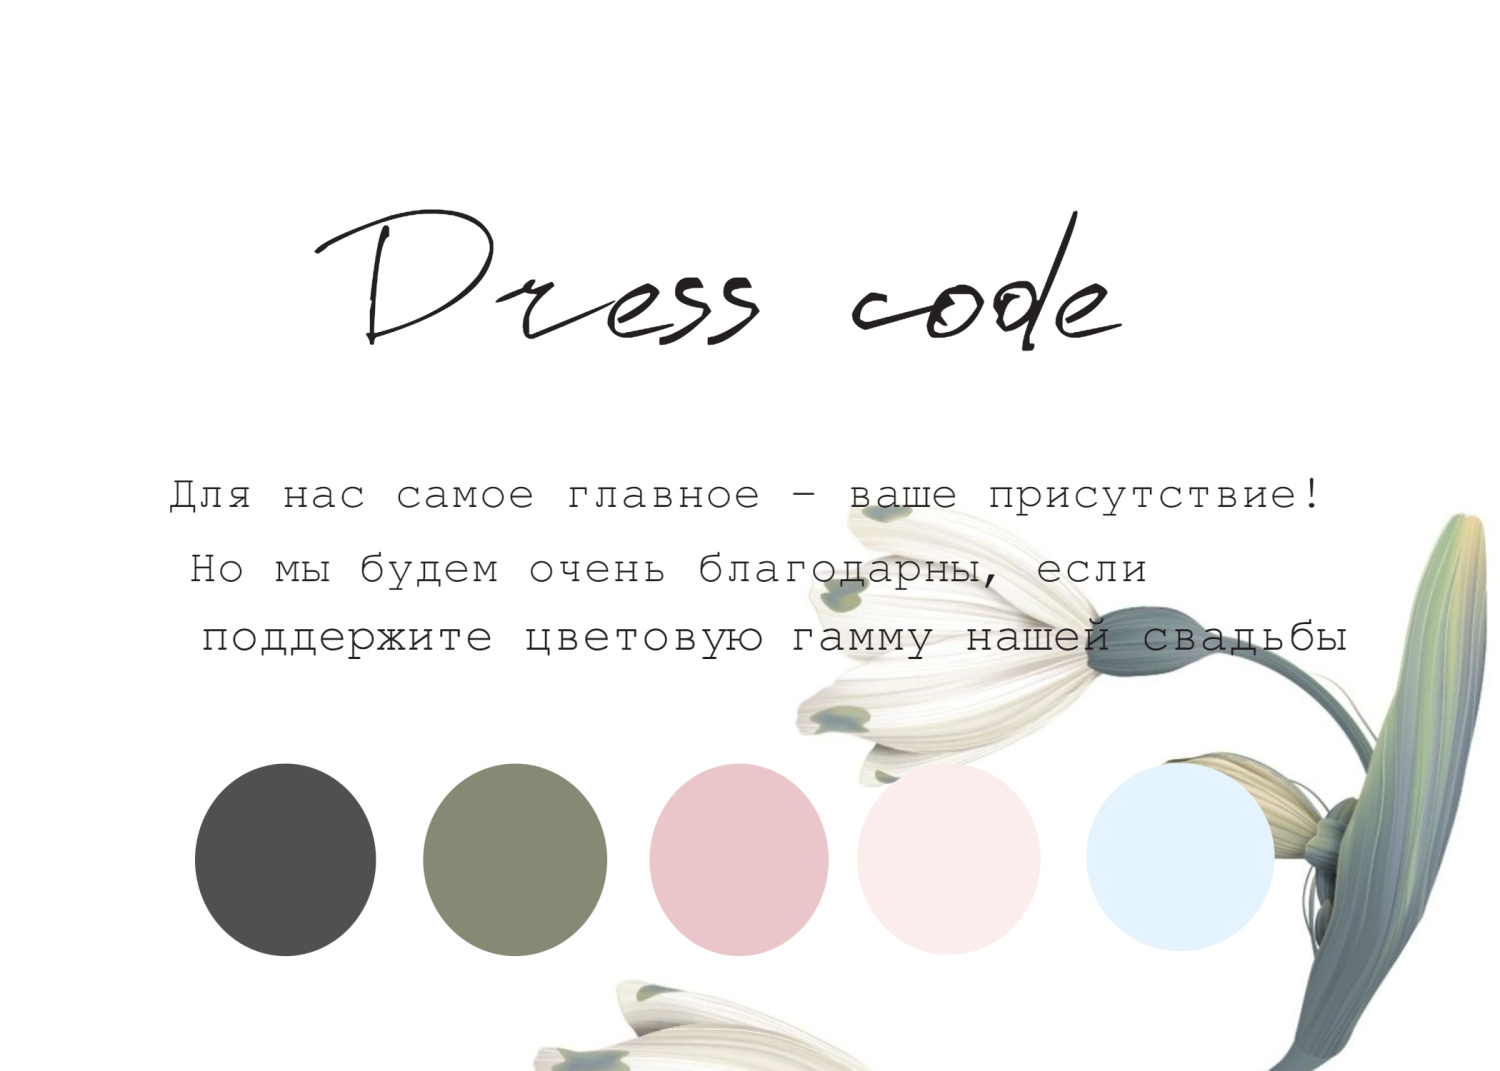 Дресс-код в стиле с белыми цветами